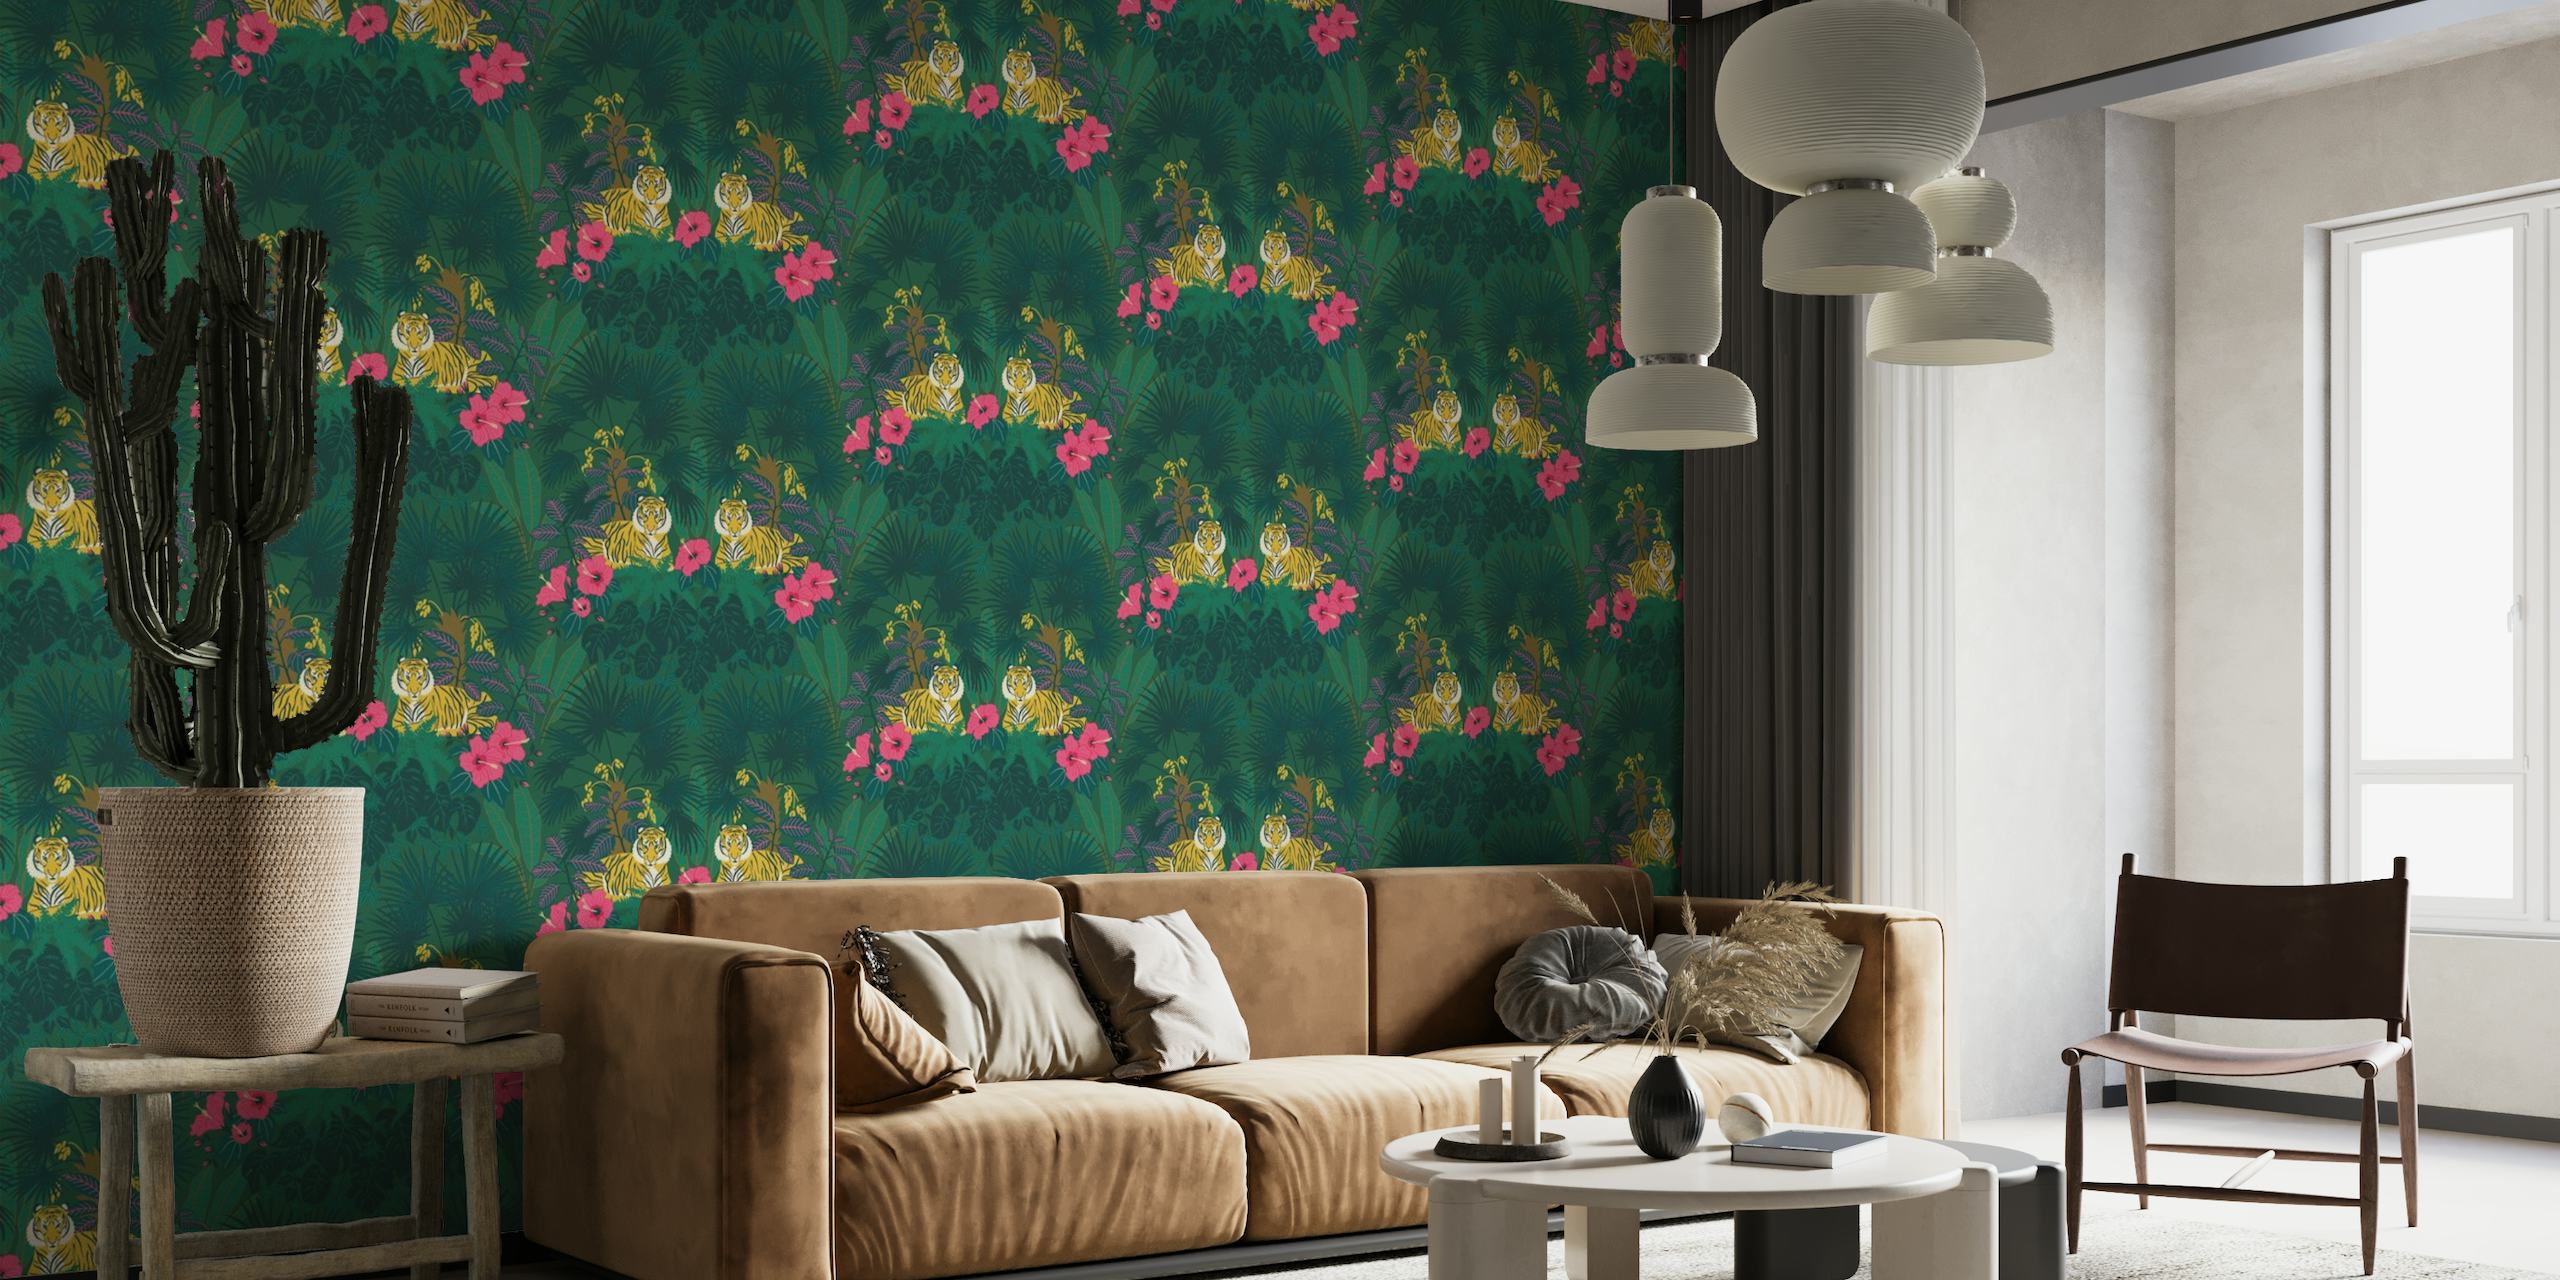 Proud Tiger - Javan Green - mural de parede mostrando tigres, palmeiras, monstera e hibiscos em um fundo verde